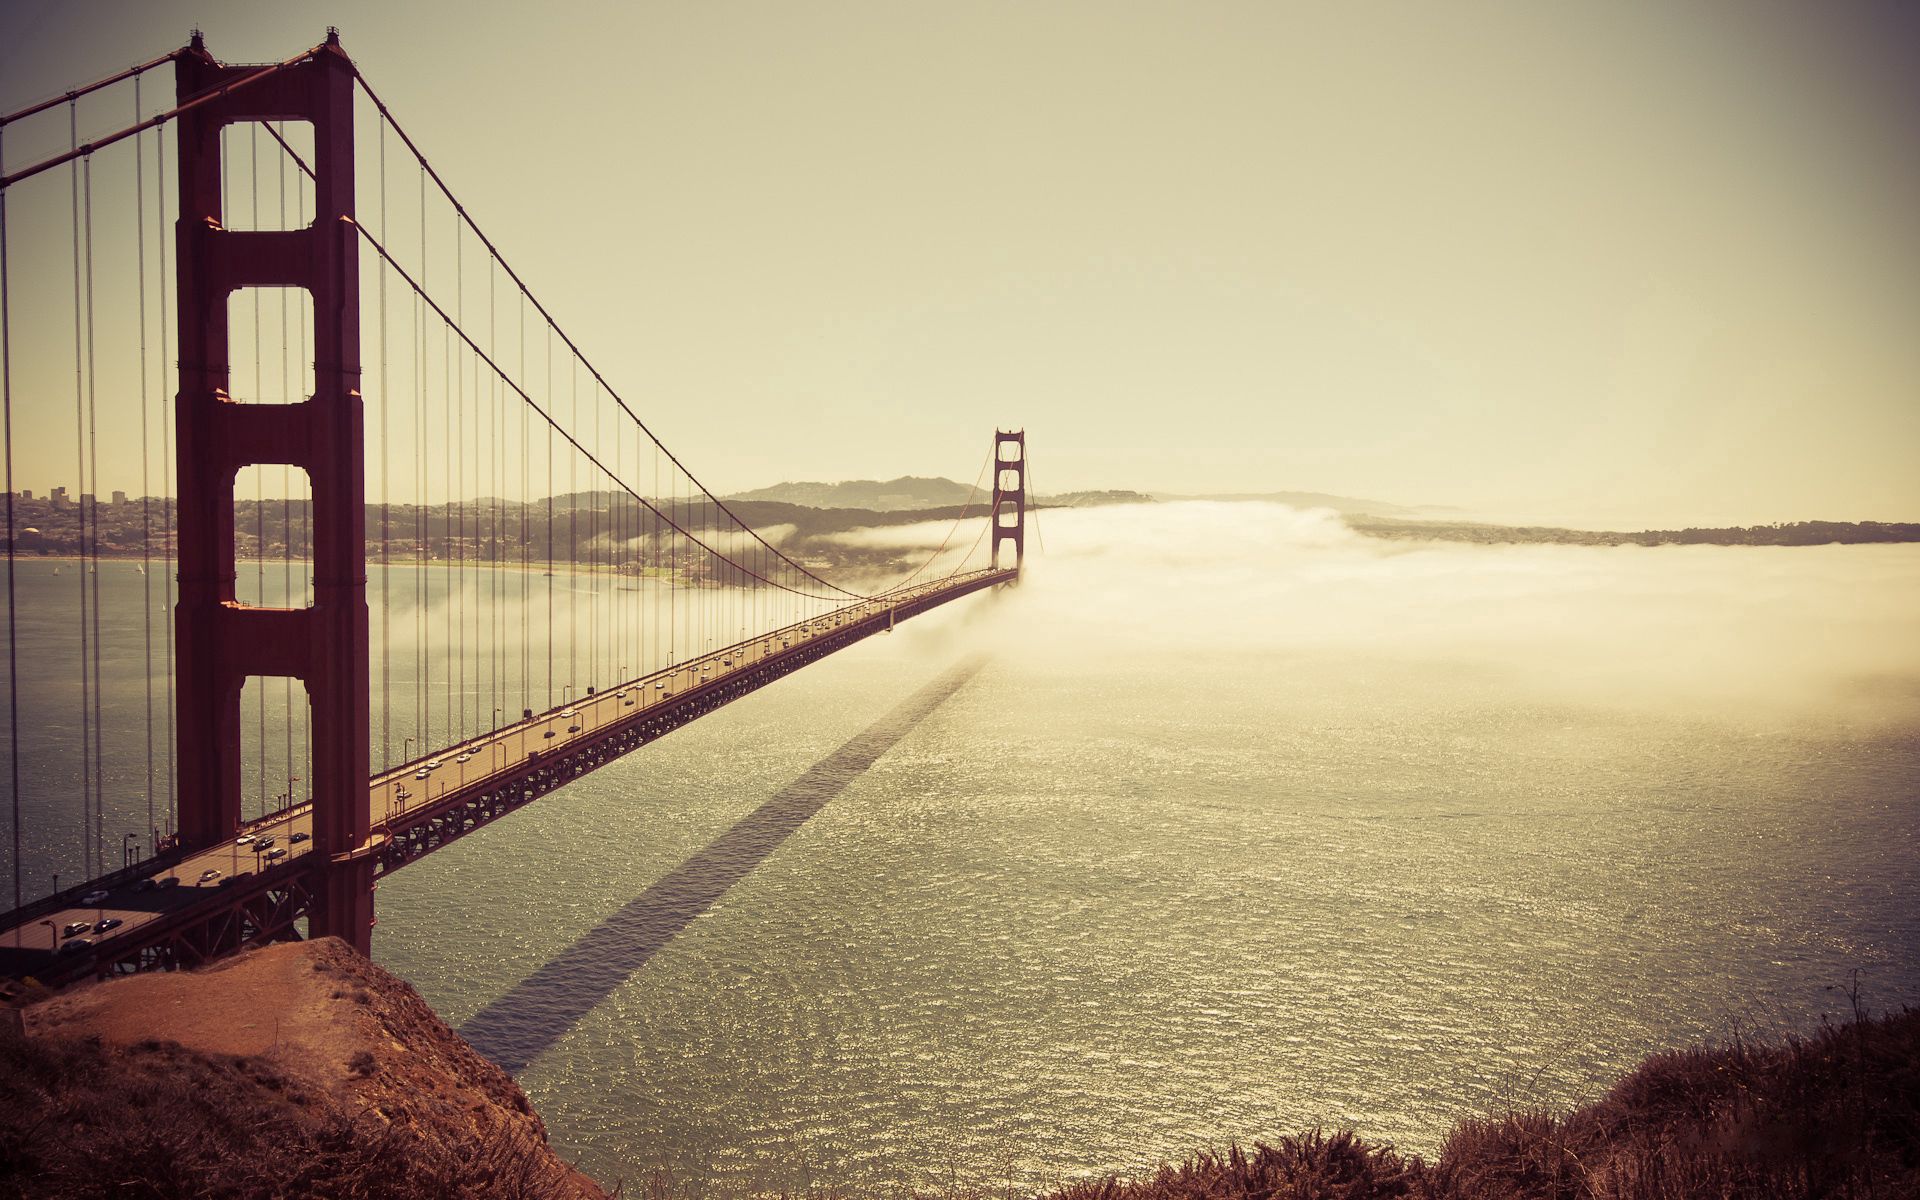 San Francisco Widescreen image